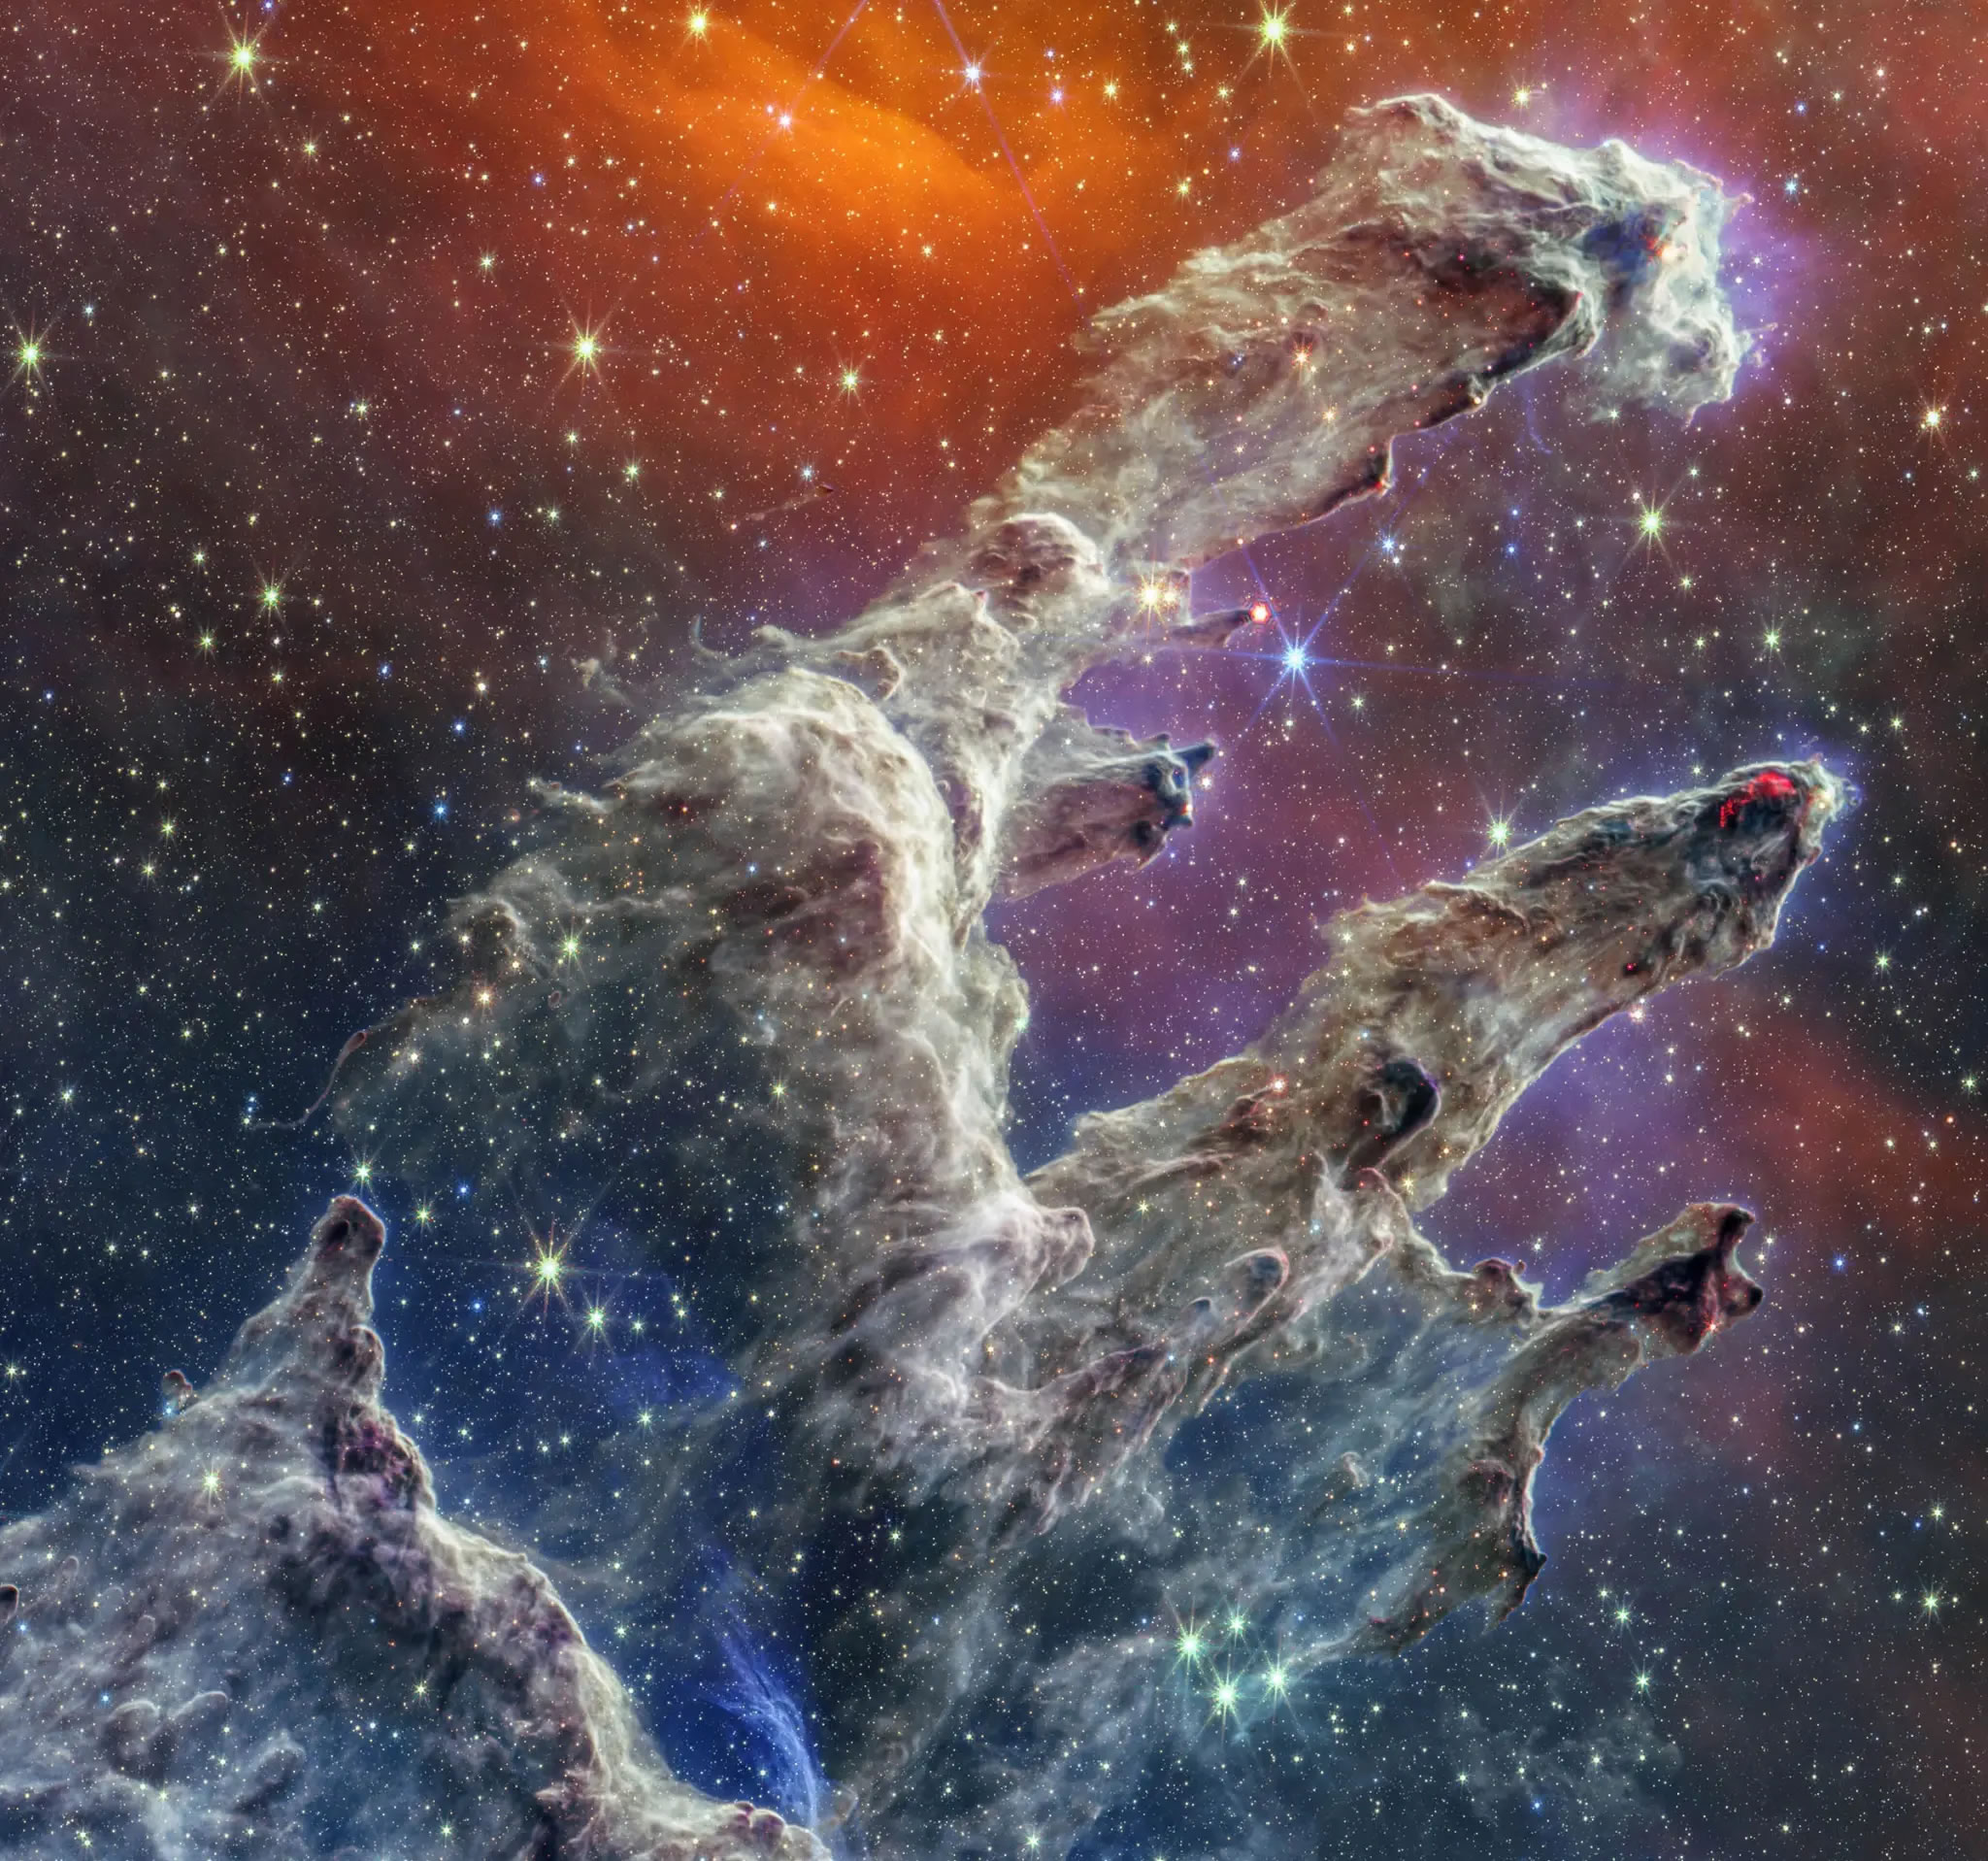 詹姆斯·韦伯太空望远镜最新捕捉到有史以来最详细的“创世之柱”图像